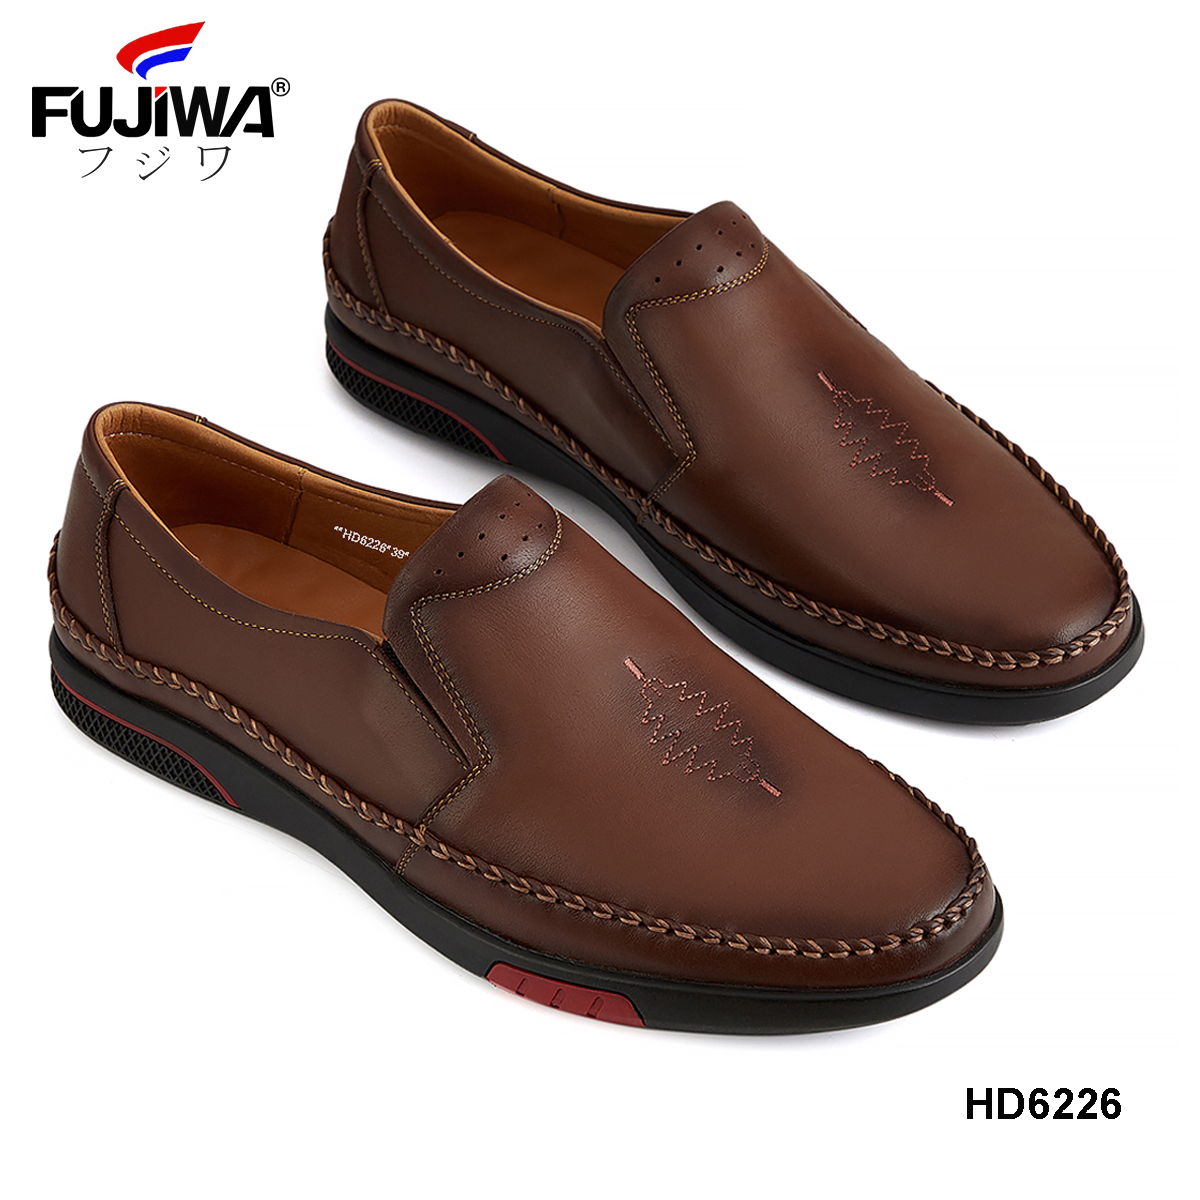 Giày Lười Mọi Nam Da Bò Fujiwa - HD6226. 100% Da bò thật Cao Cấp loại đặc biệt. Giày được đóng thủ công (handmade)